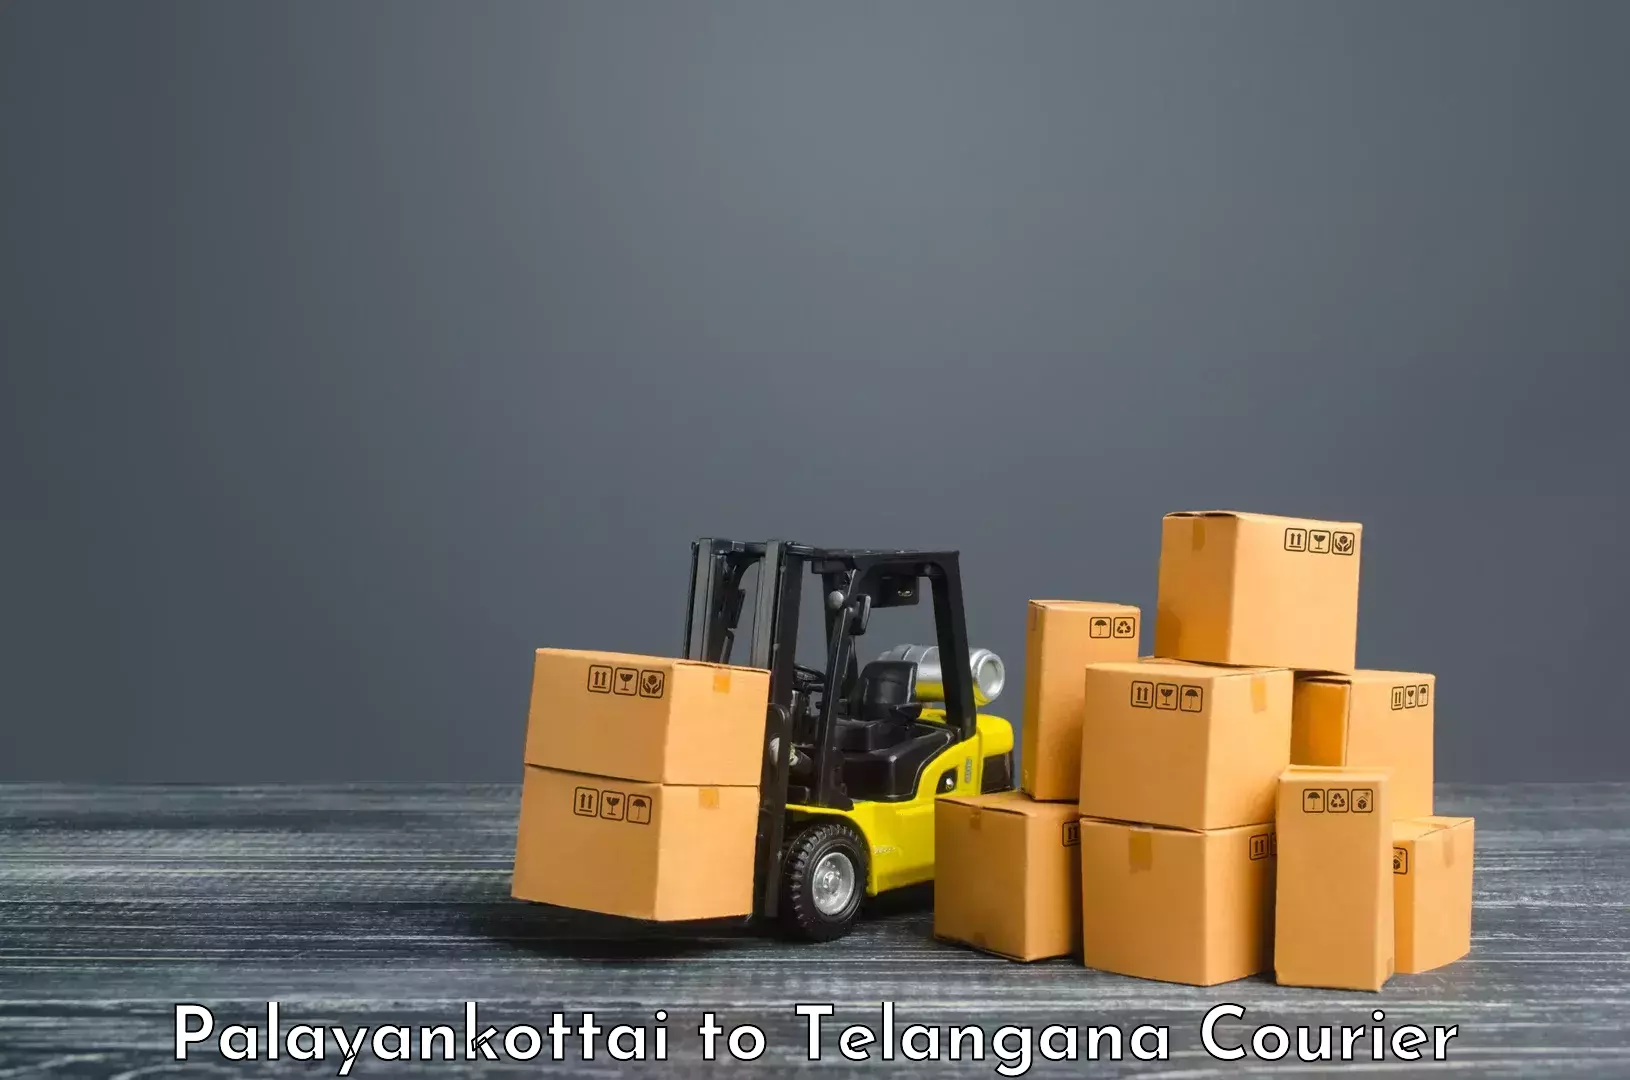 Dynamic courier services Palayankottai to Kothakota